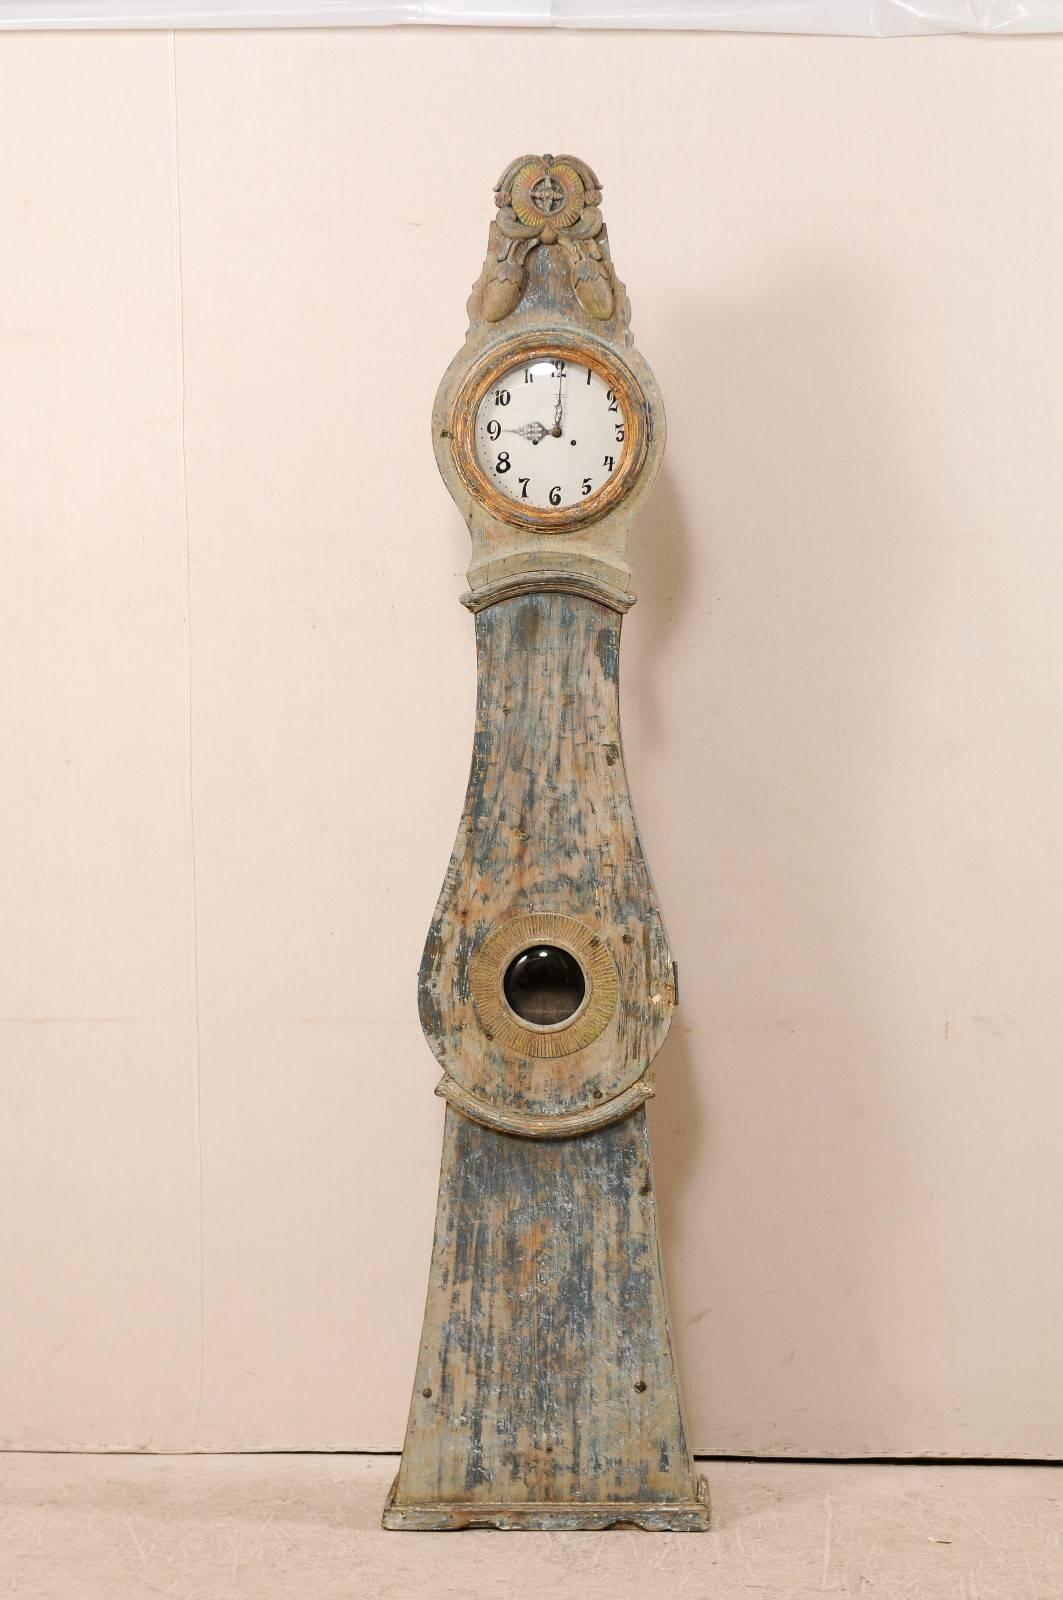 Eine bemalte Holzuhr aus dem 19. Jahrhundert aus Nordschweden. Diese schwedische Uhr aus der Grafschaft Norrbotten, Schweden (nördliche Region), weist ein schön geschnitztes, übertriebenes und erhabenes Wappen auf, das von einem Paar hängender